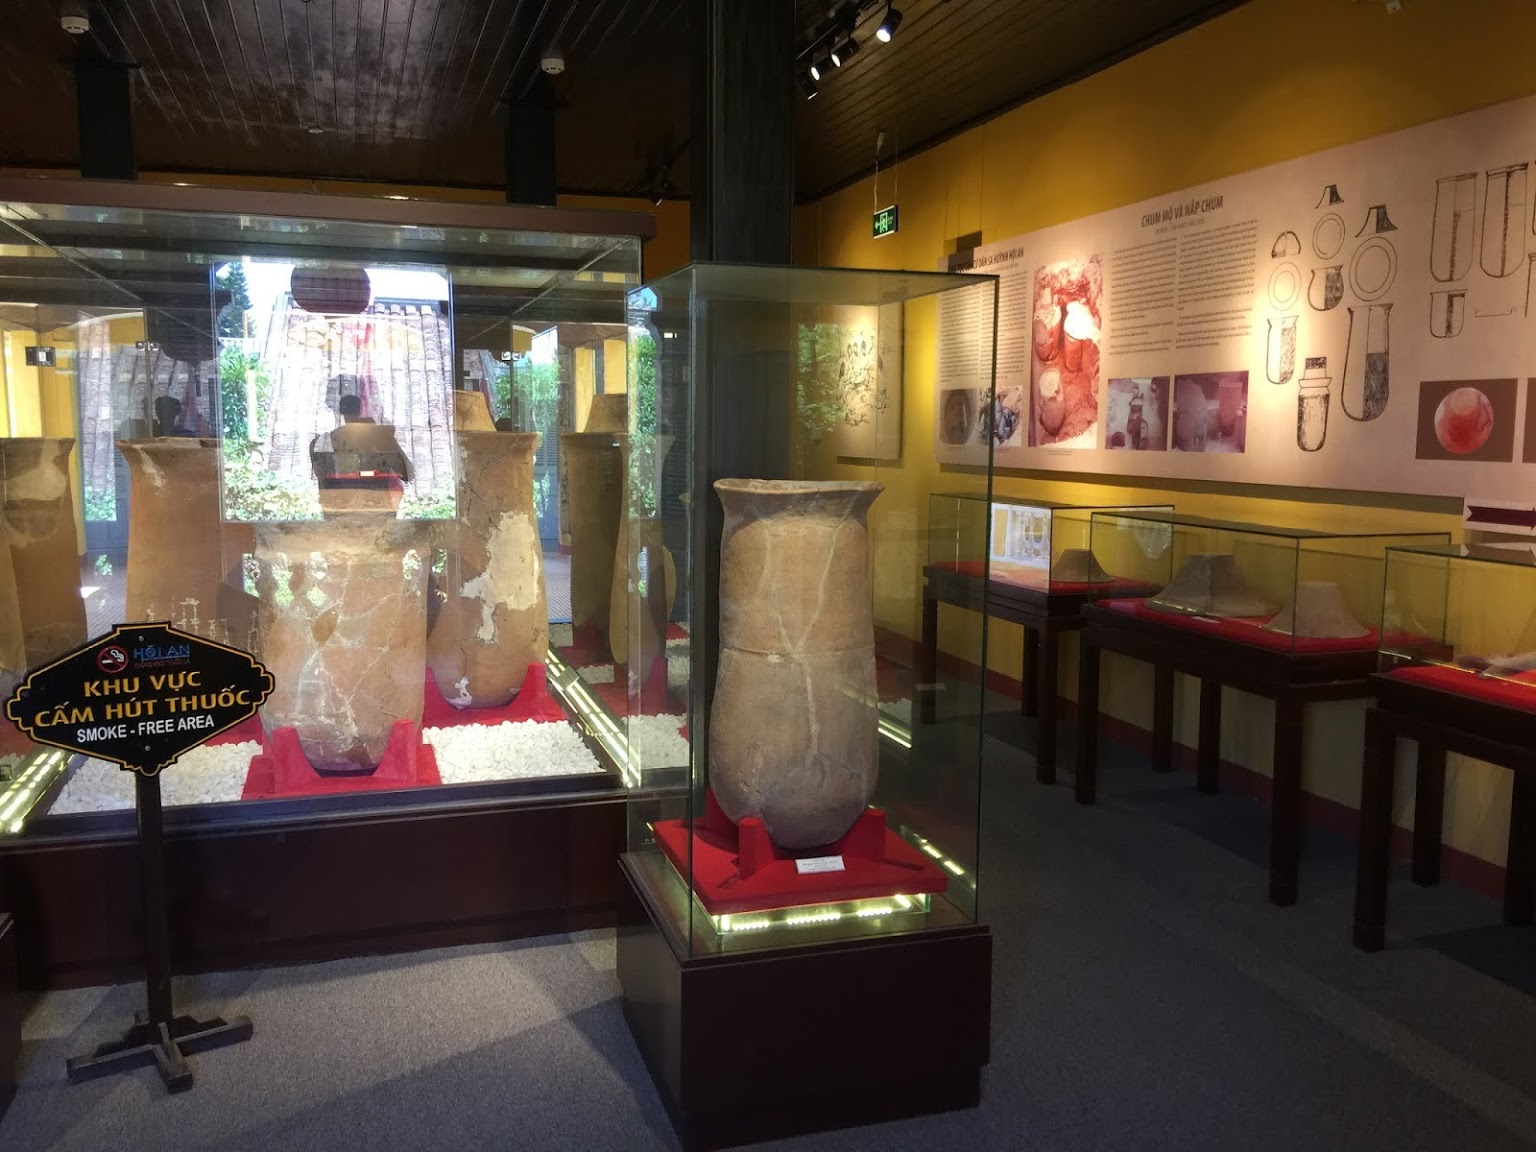 Bảo tàng văn hóa Sa Huỳnh Hội An - Độc đáo nền văn hóa 2.000 năm đô thị cổ 3